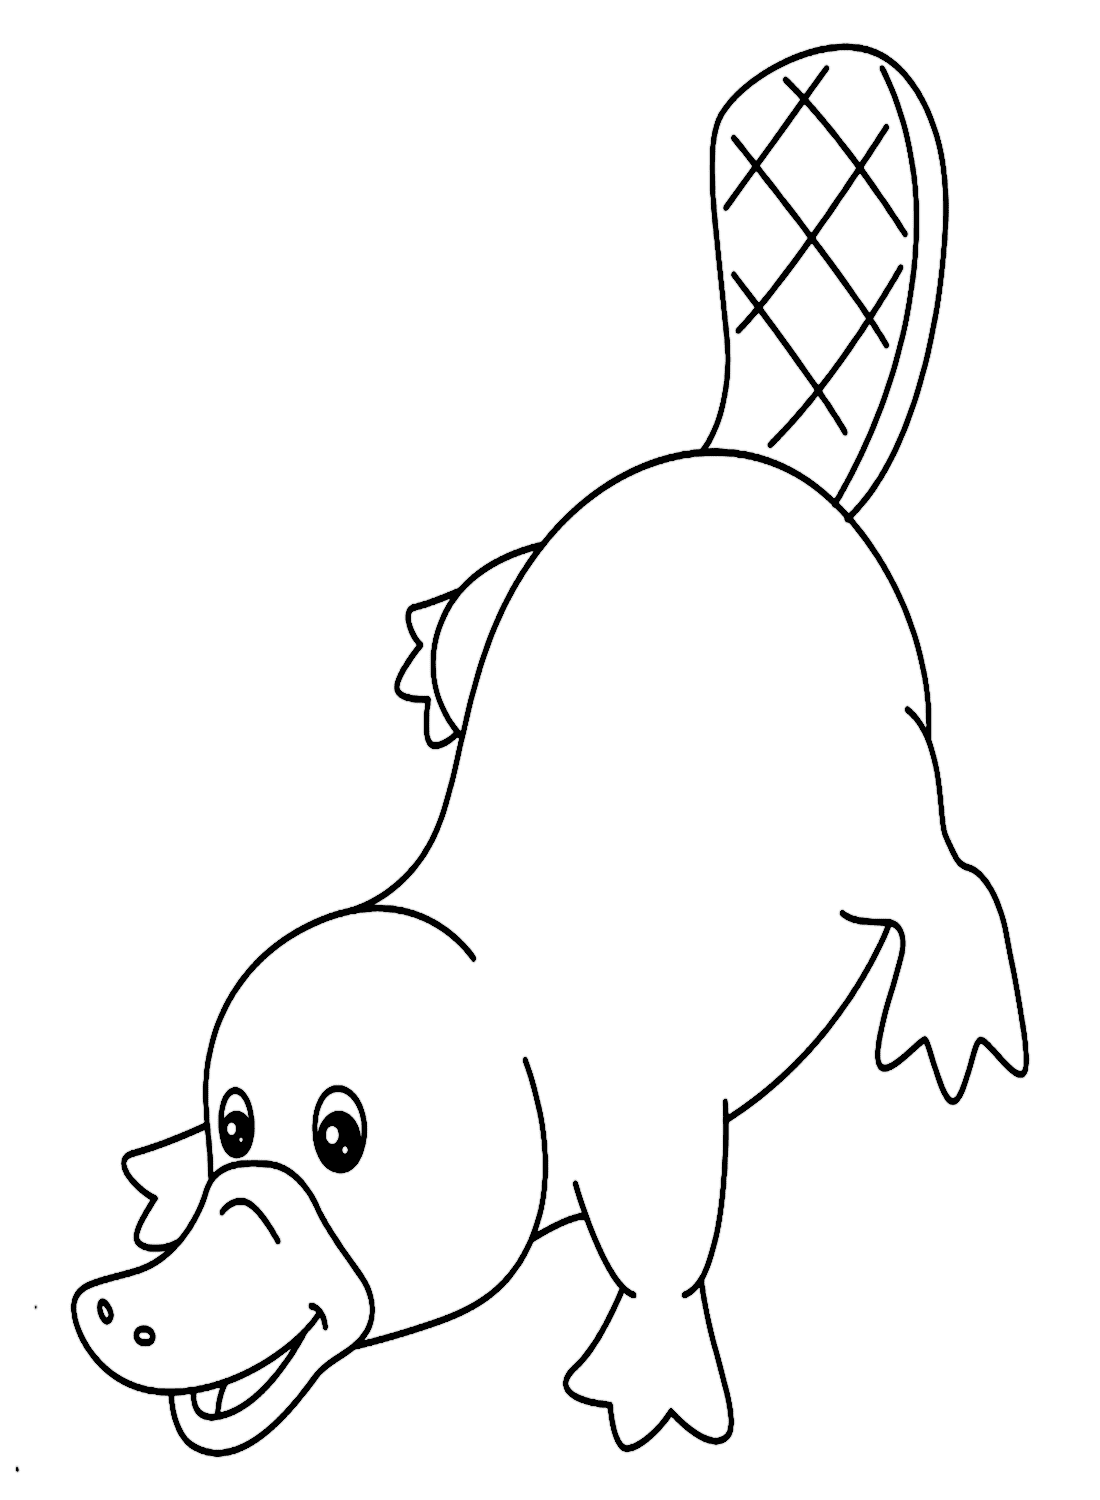 Очертания утконоса от Platypus